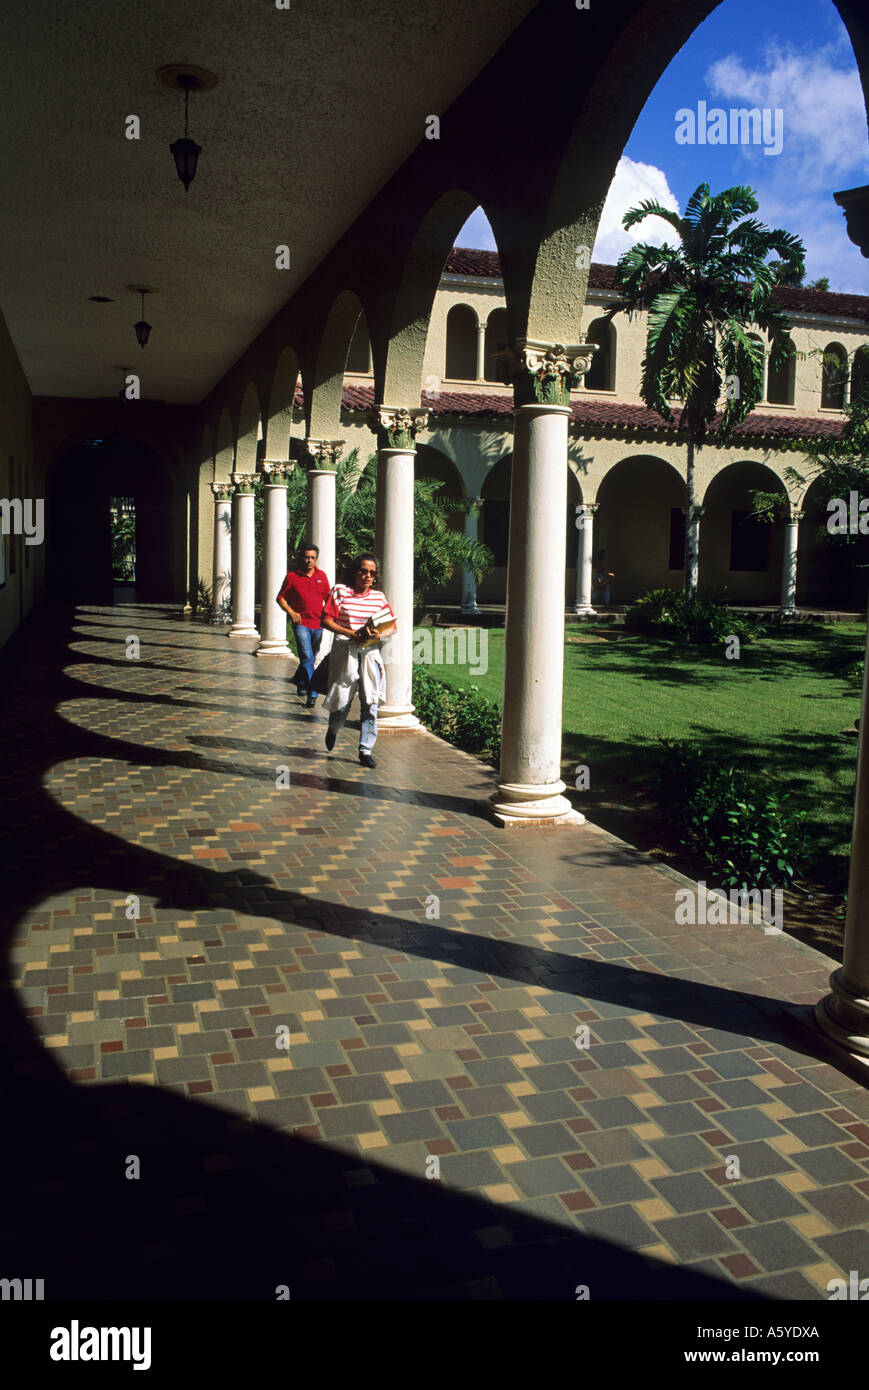 University of puerto rico fotografías e imágenes de alta resolución - Alamy